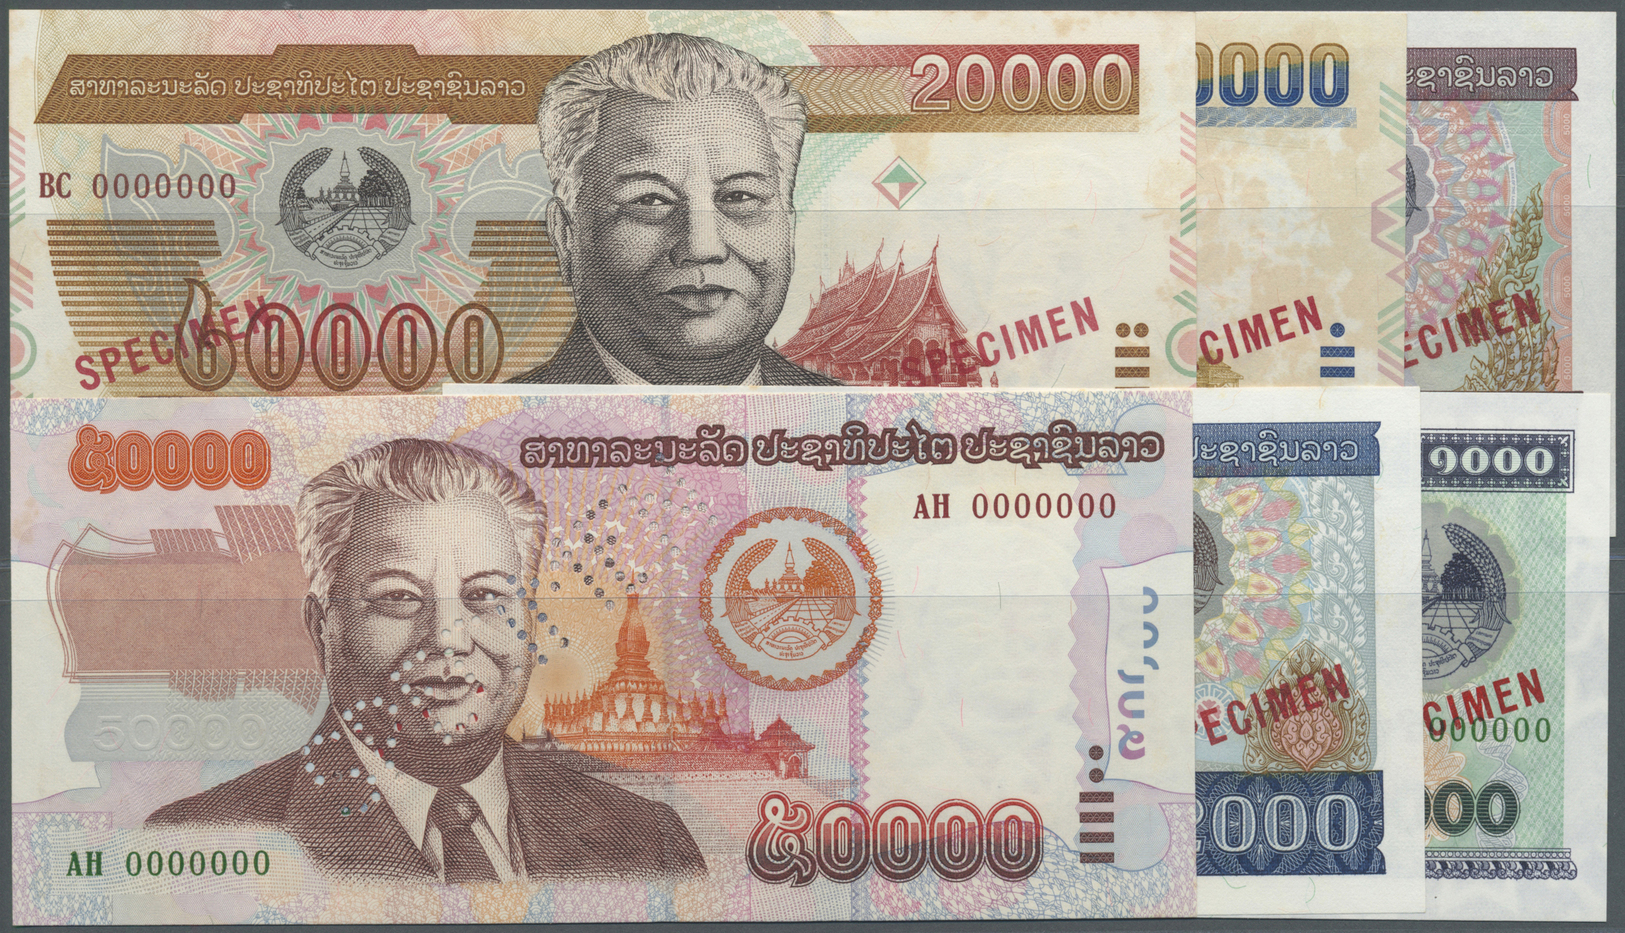 01378 Laos: Set Of 6 Specimen Notes Laos Containing 1000 Kip 1998, 2000 Kip 1997, 5000 Kip 1997, 20000 Kip 2002, 10000 K - Laos